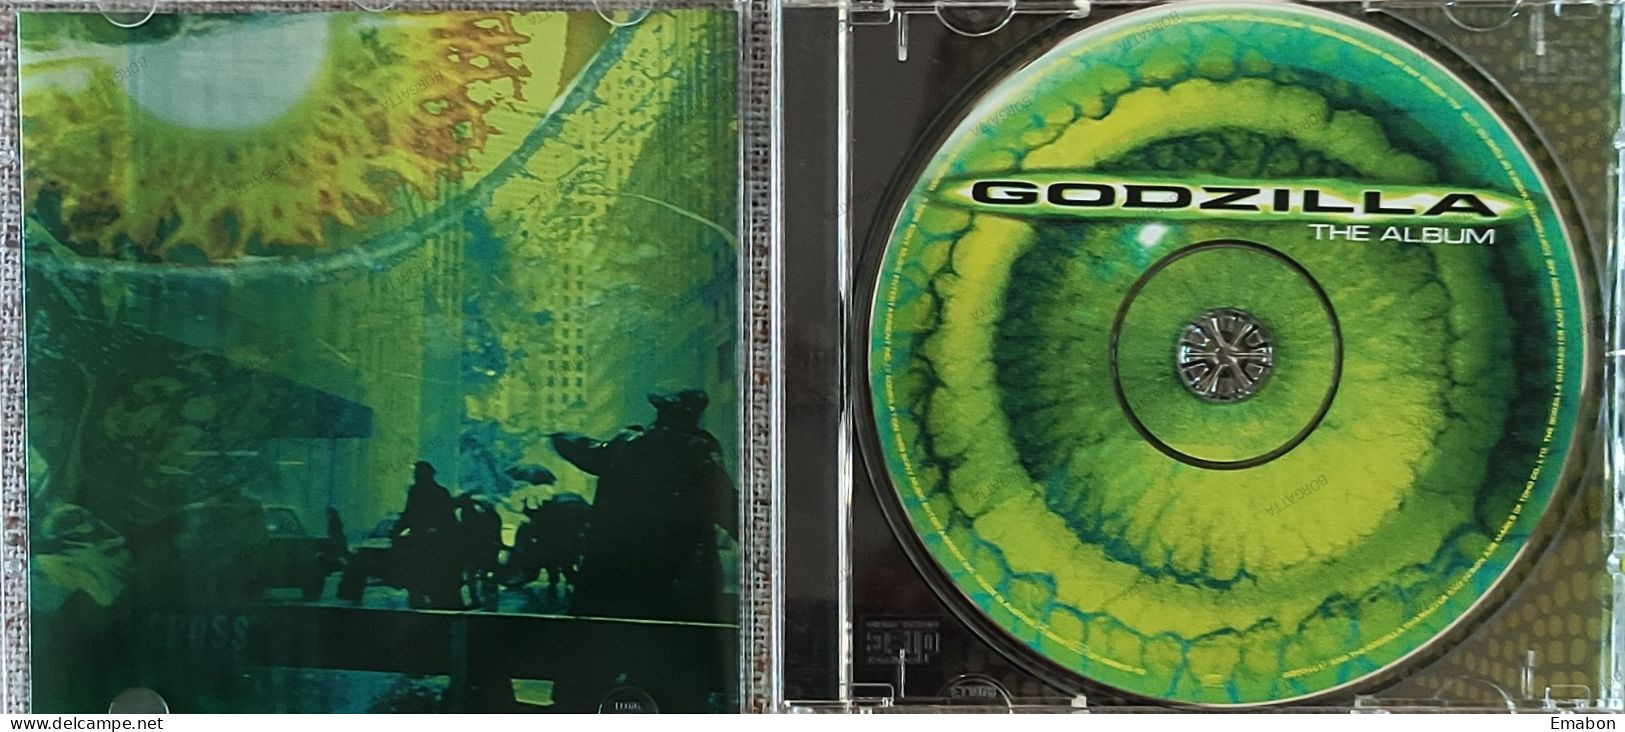 BORGATTA - FILM MUSIC  - Cd   THE ALBUM GODZILLA - EPIC/SONY 1998- USATO In Buono Stato - Filmmuziek